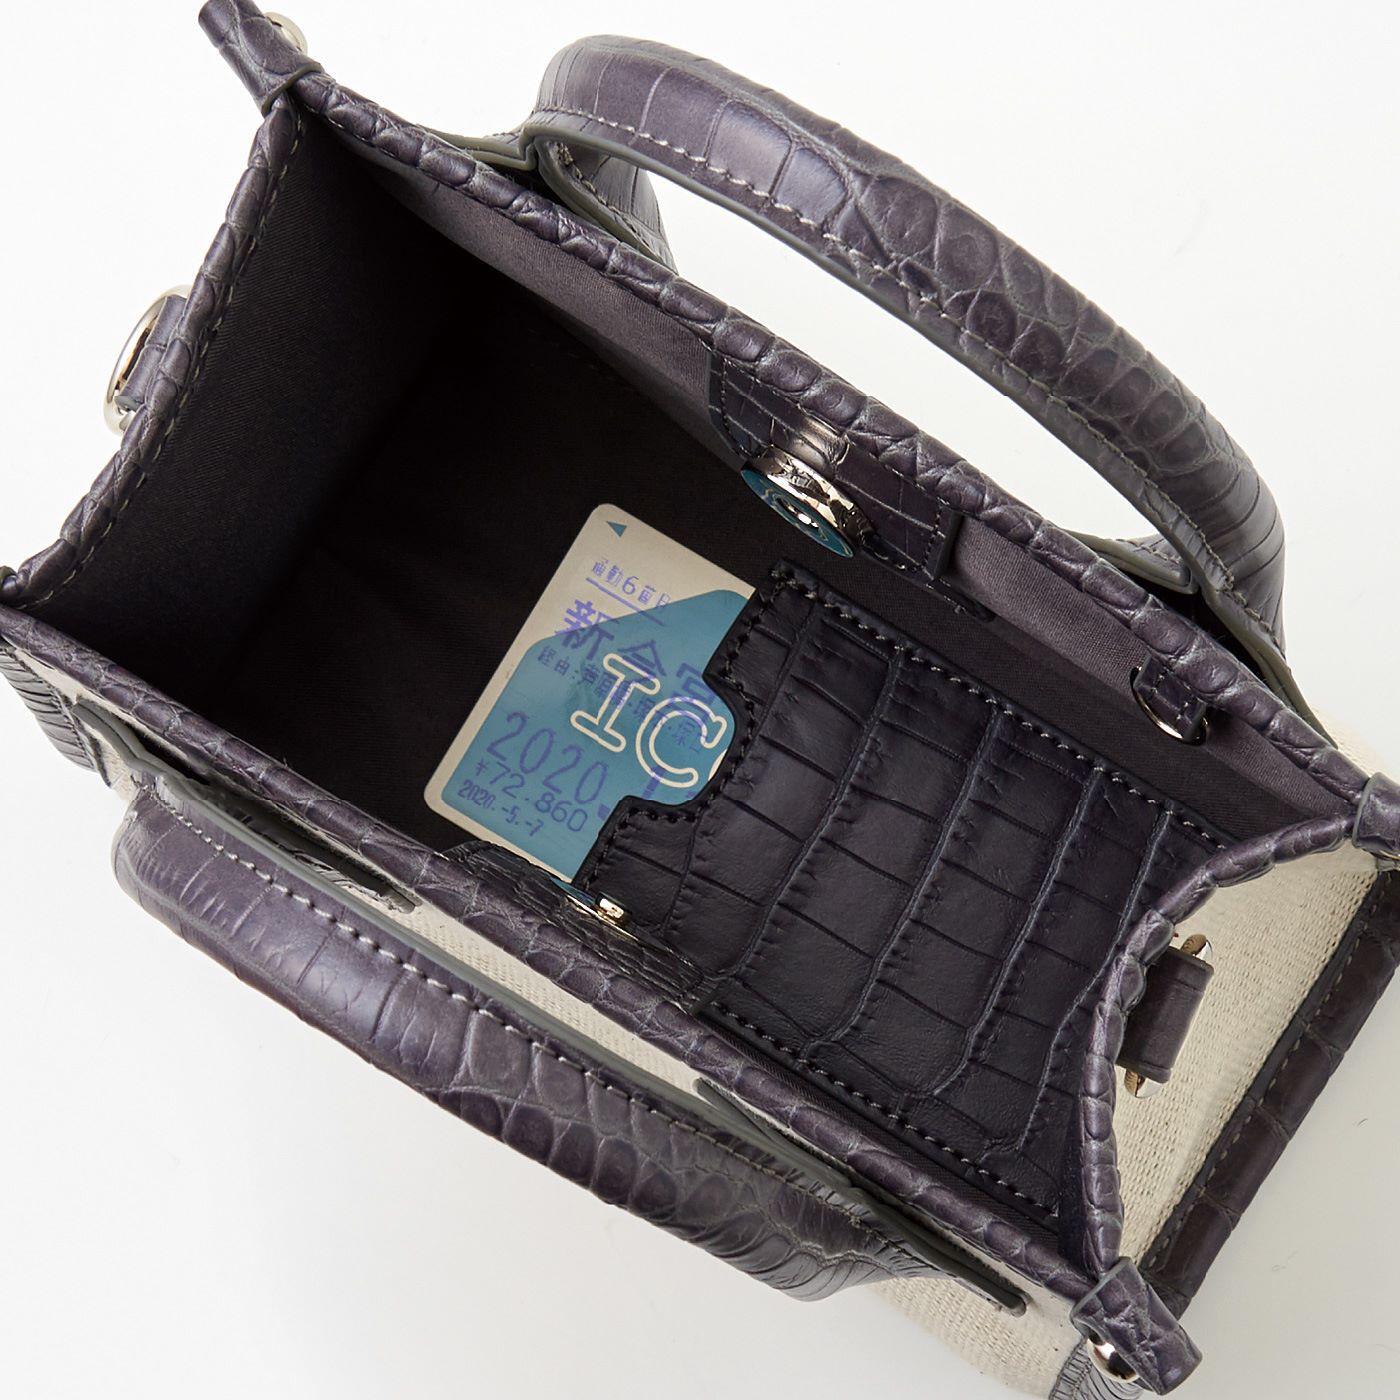 Real Stock|UP.de　本格仕立て ナノサイズの2-WAYショルダーハンドバッグ|内側の底面にICカードが入る隠しポケット付き。